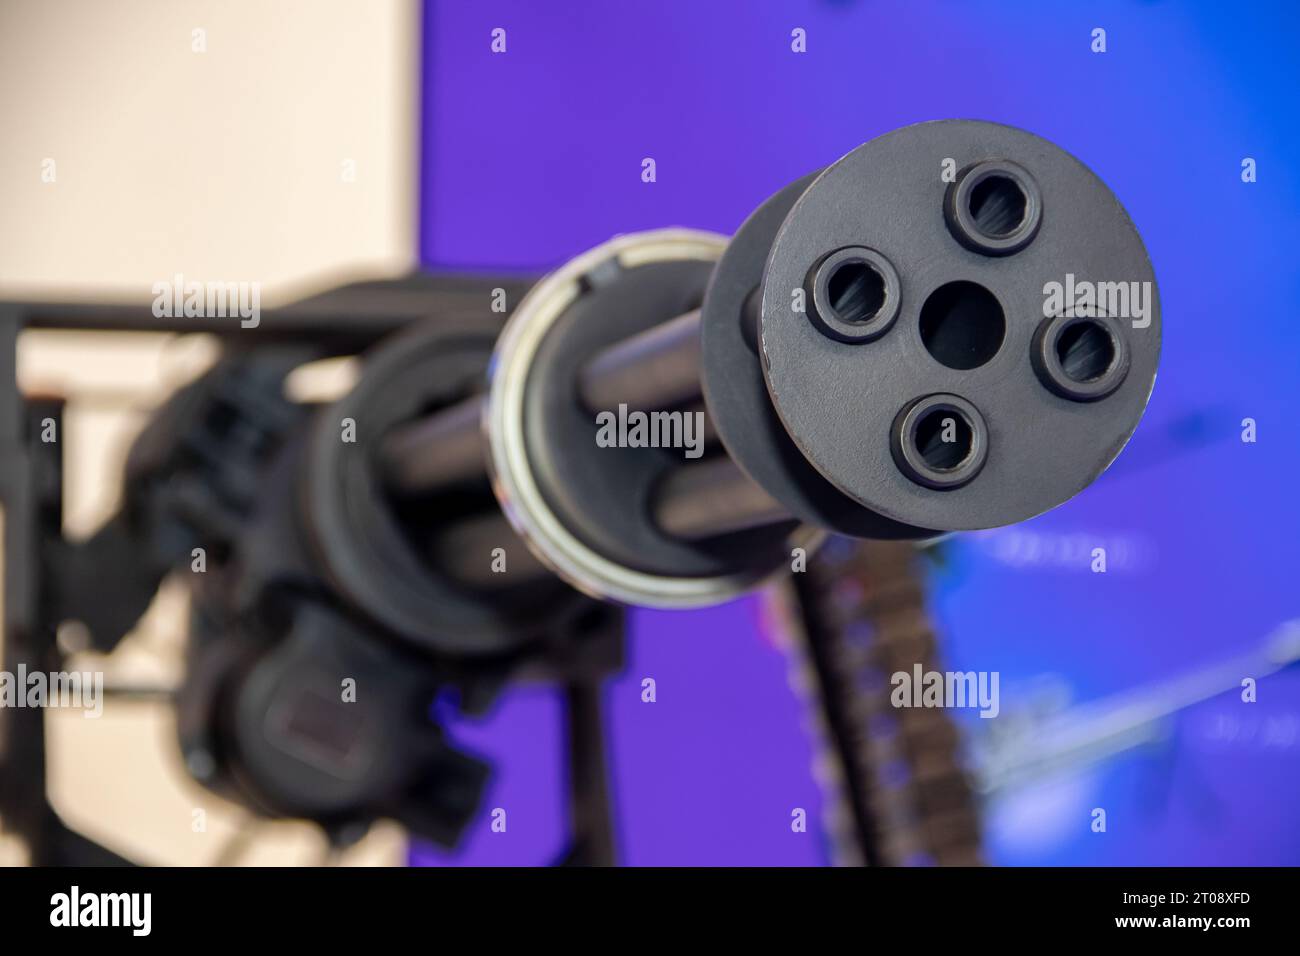 Vierkantige 23-mm-Drehkanonen-Maschinengewehr, auf der internationalen Militärmesse in Belgrad entdeckt Stockfoto